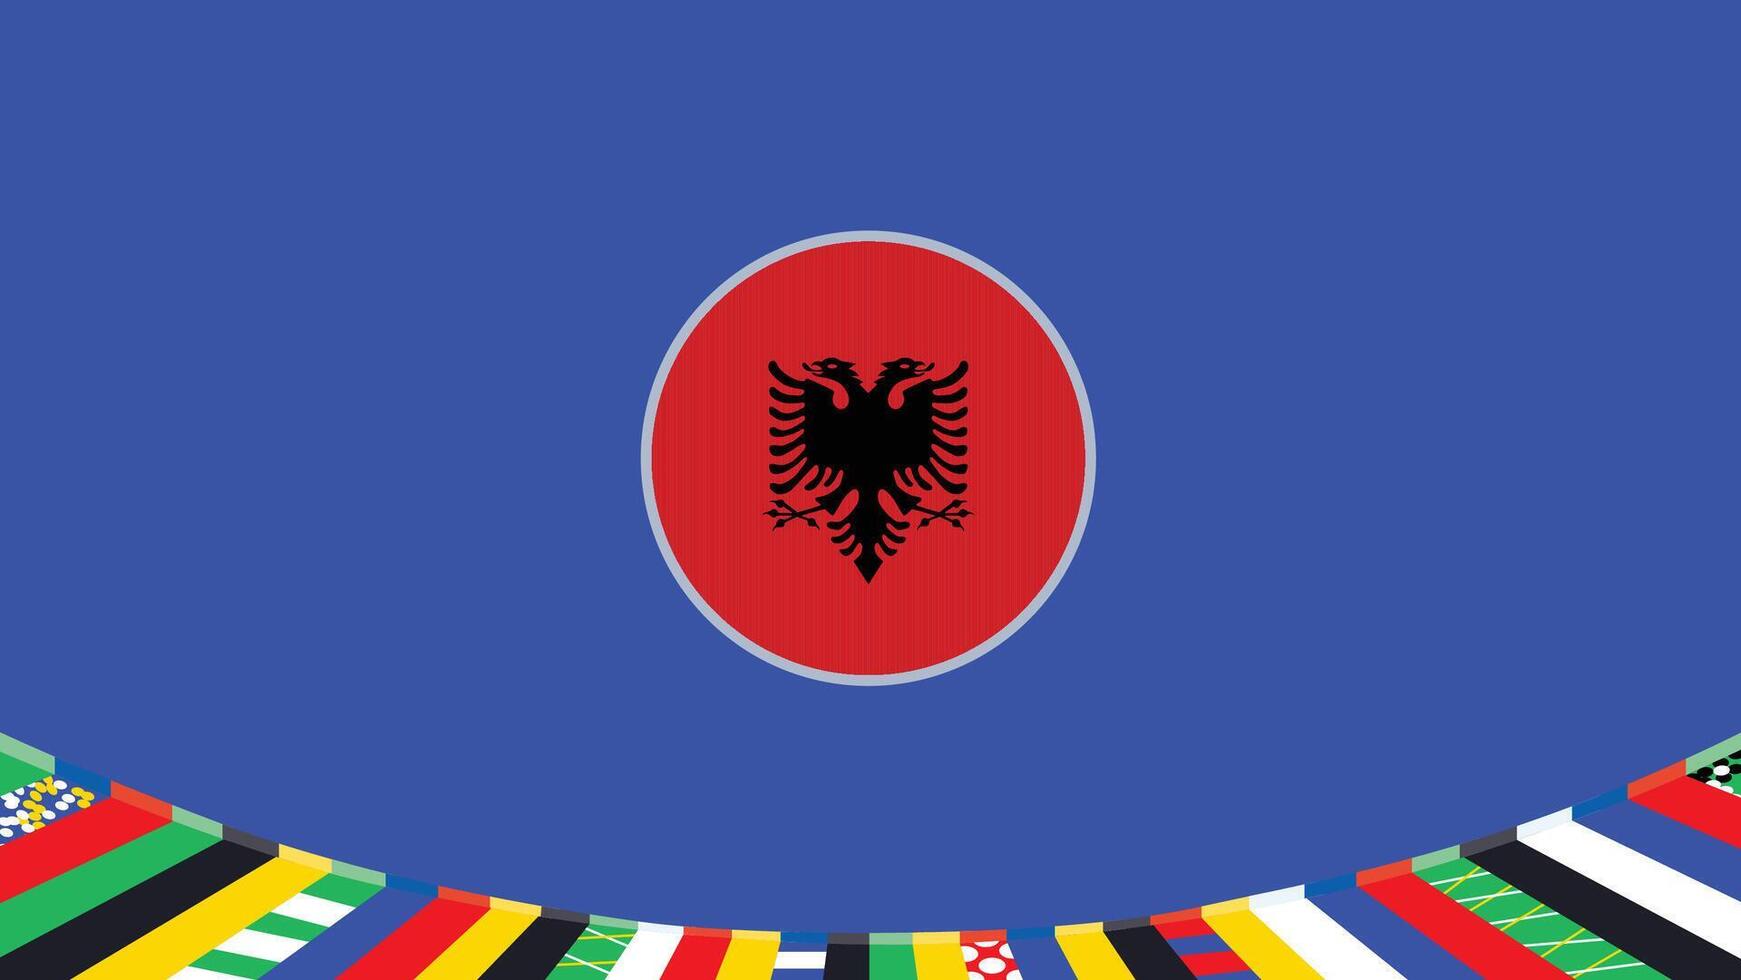 Albânia emblema bandeira europeu nações 2024 equipes países europeu Alemanha futebol símbolo logotipo Projeto ilustração vetor